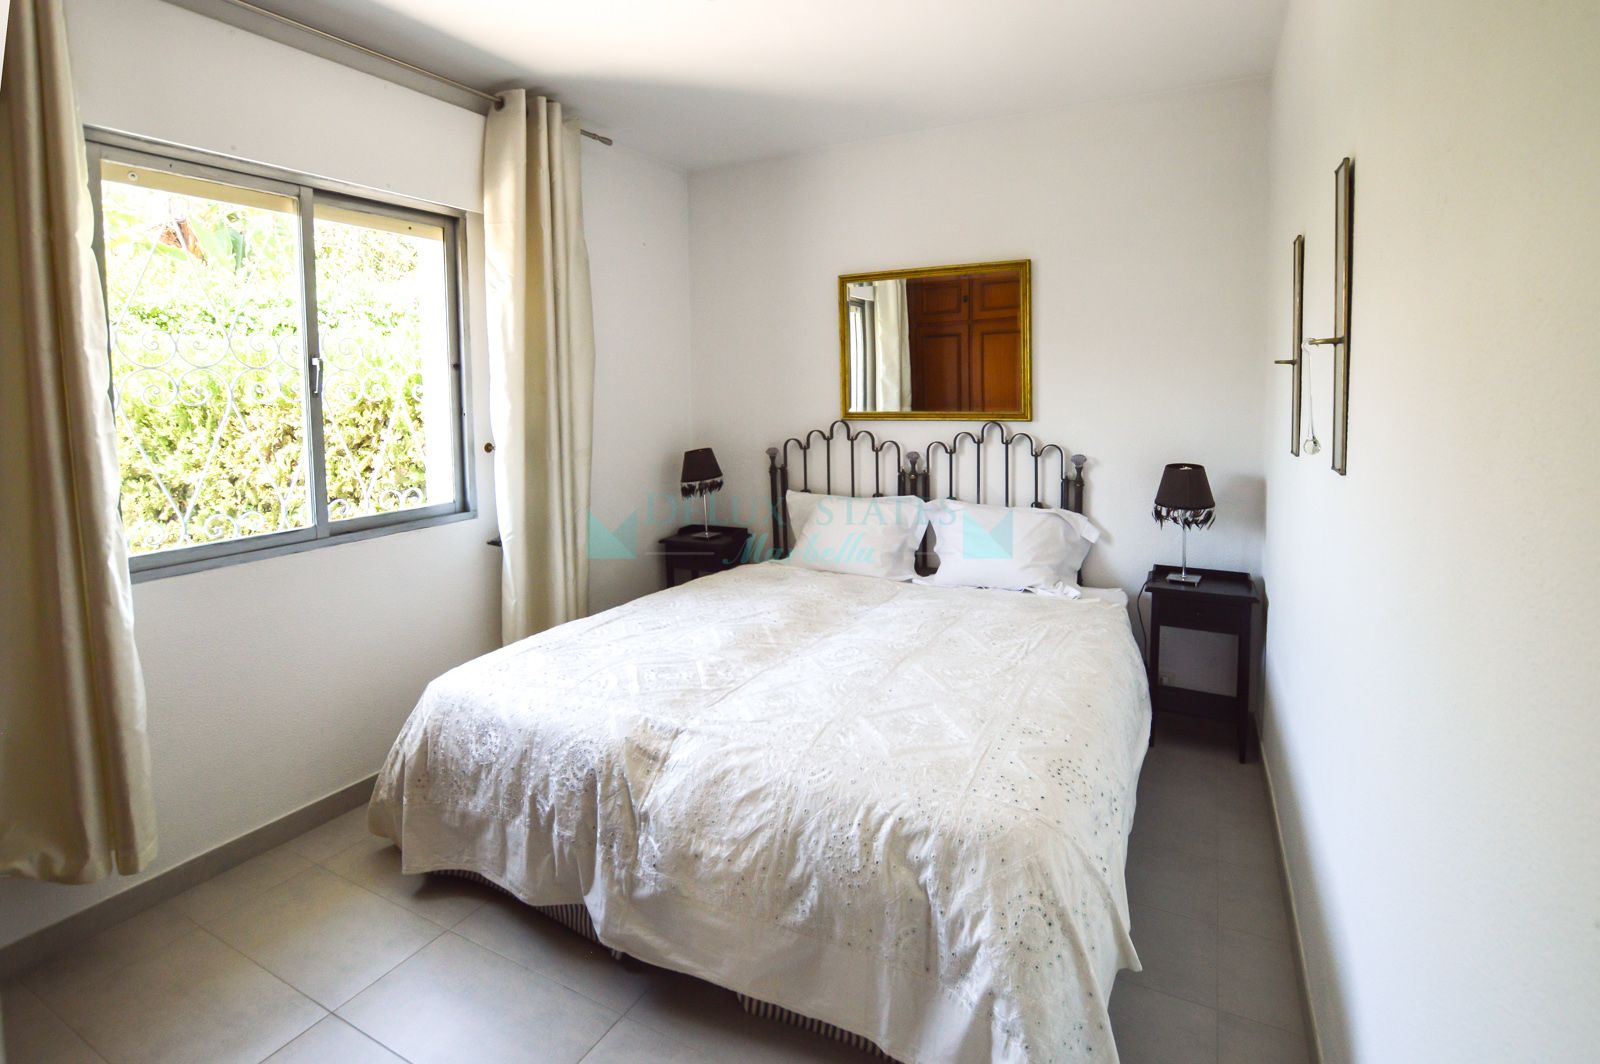 Photo Gallery - Very nice cozy villa for sale at Nueva Andalucia, Costa del Sol